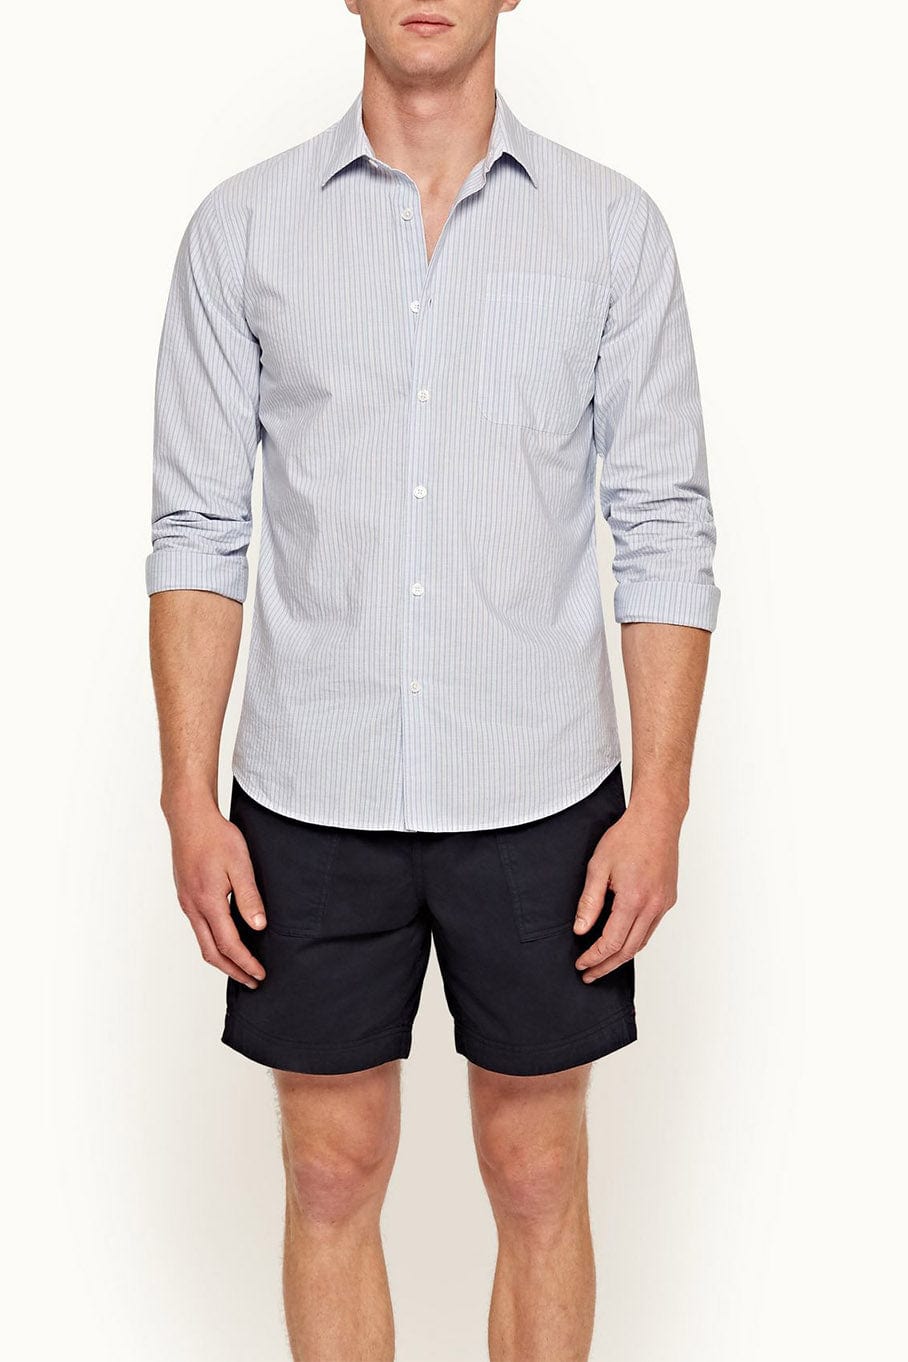 ORLEBAR BROWN-Giles Linen Stripe Button Up Shirt-